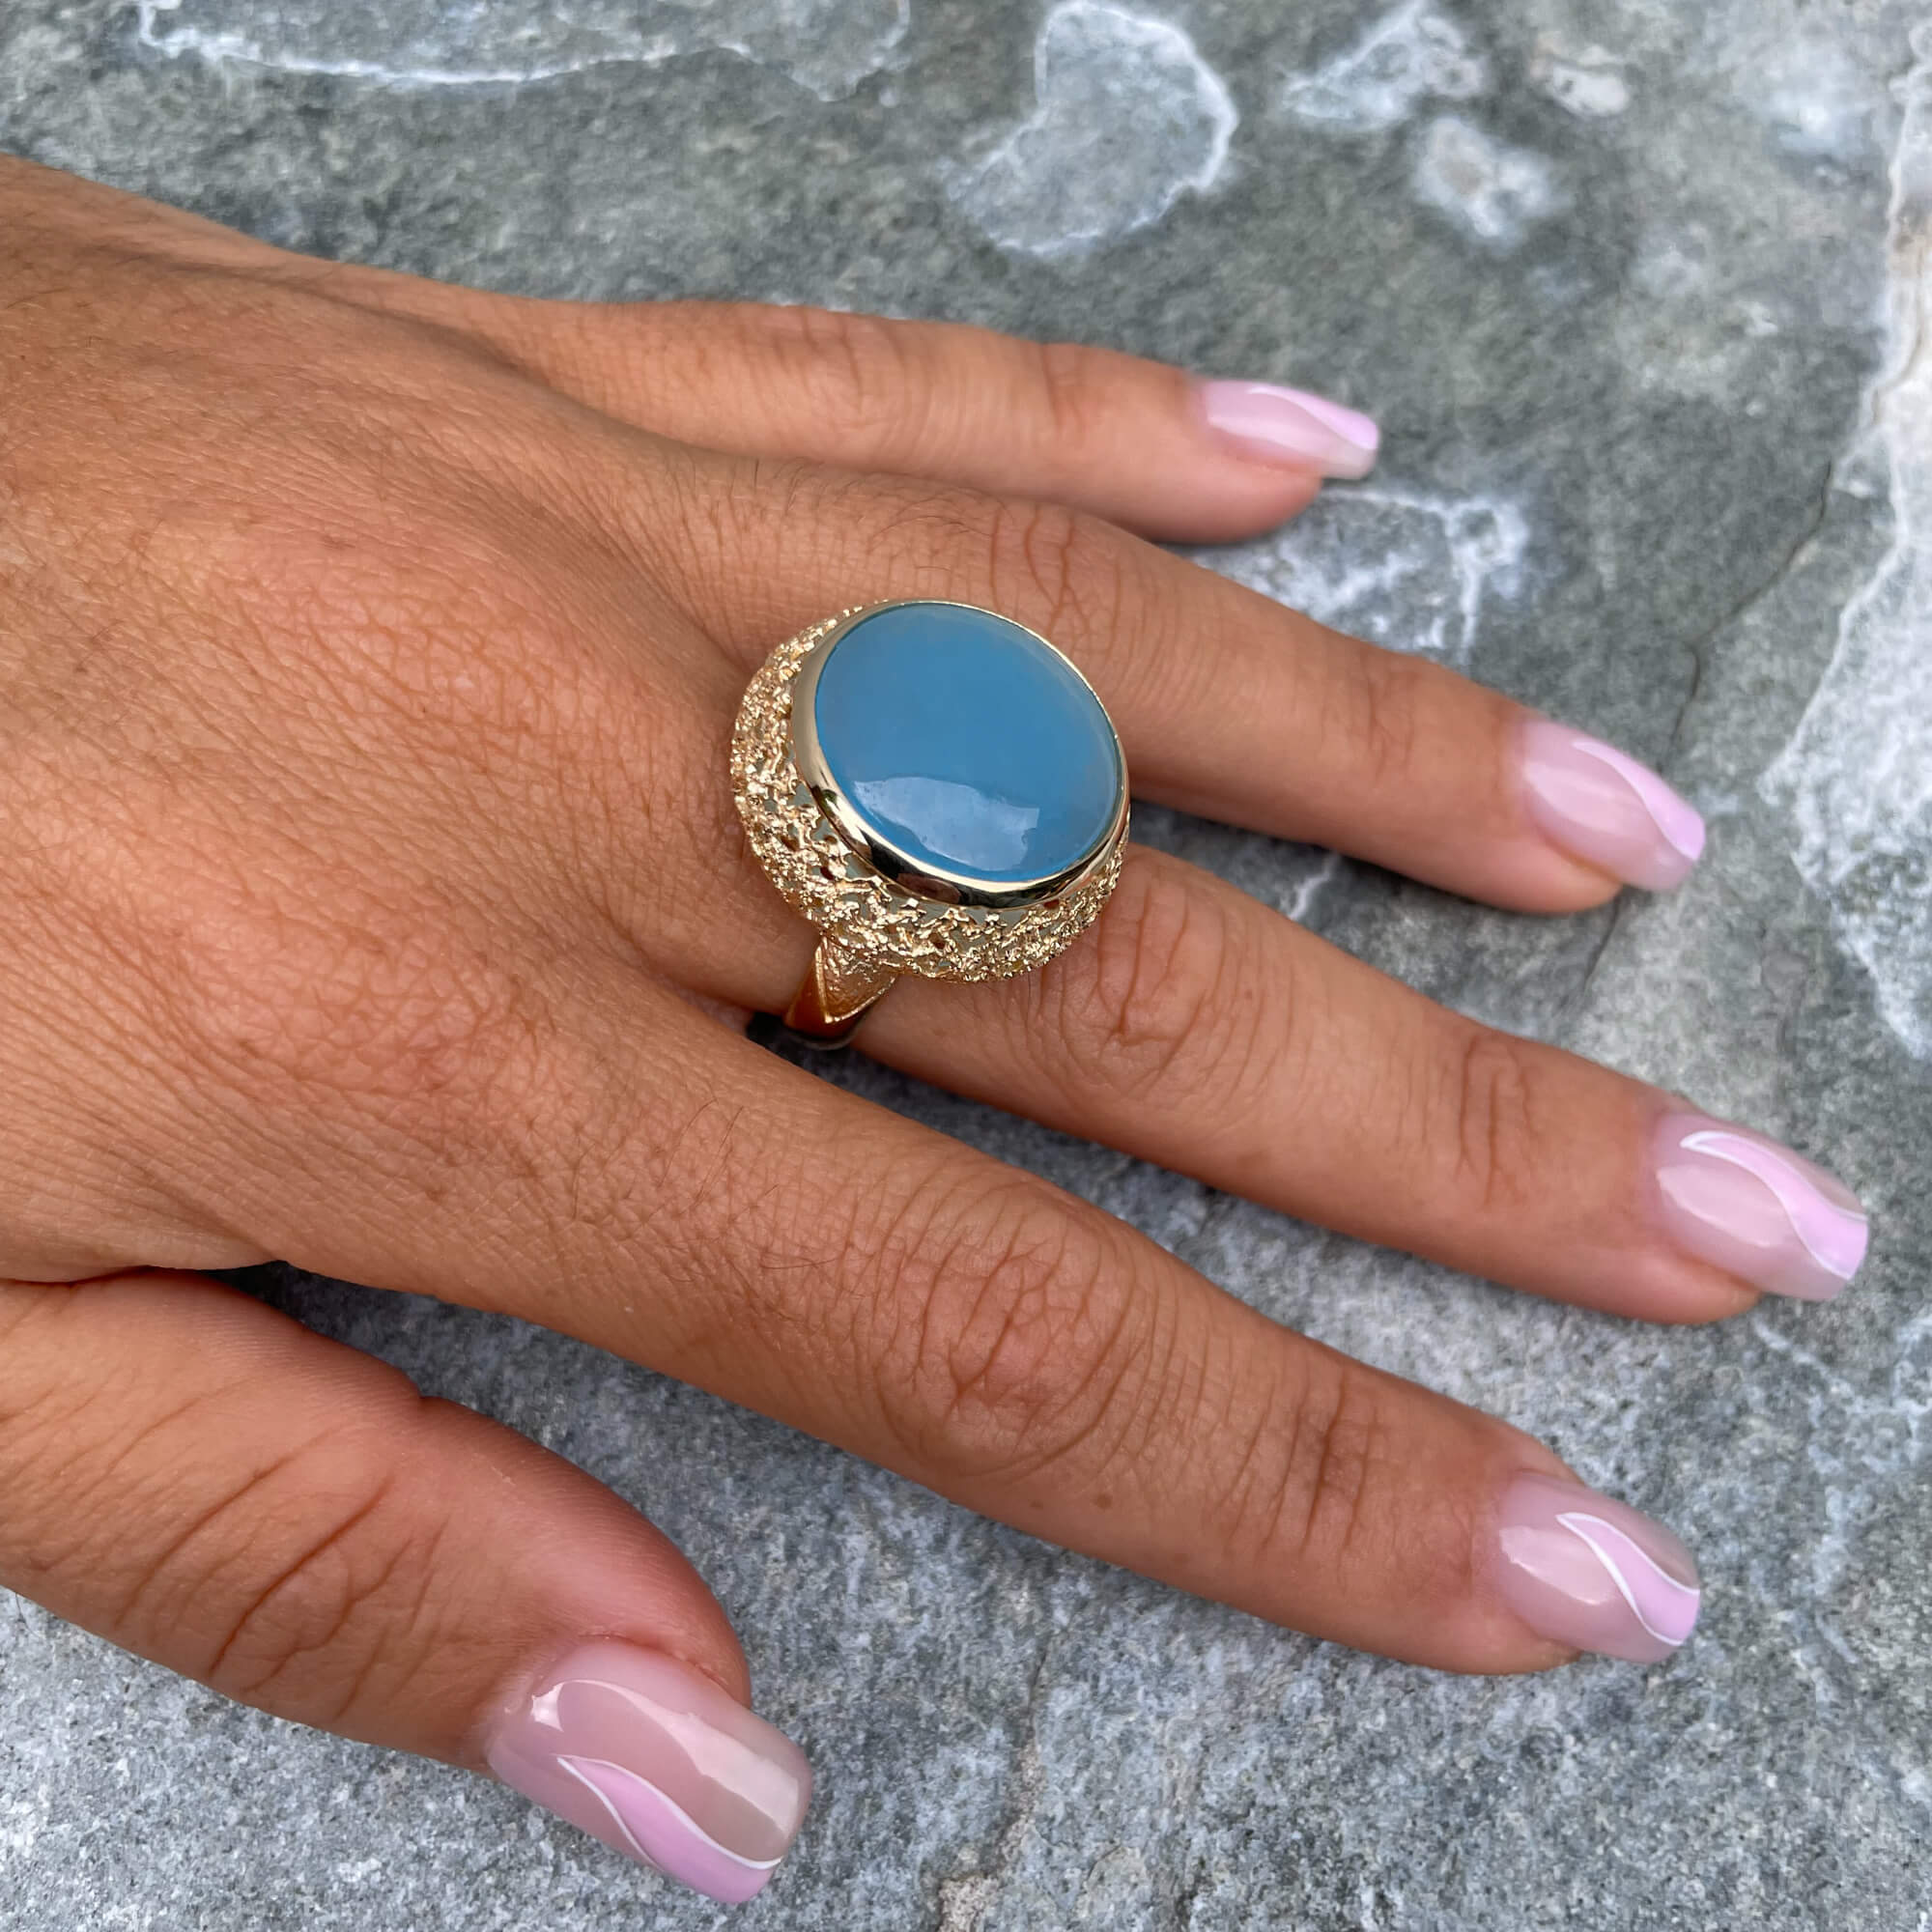 Edited gilt ring with a blue quartz stone